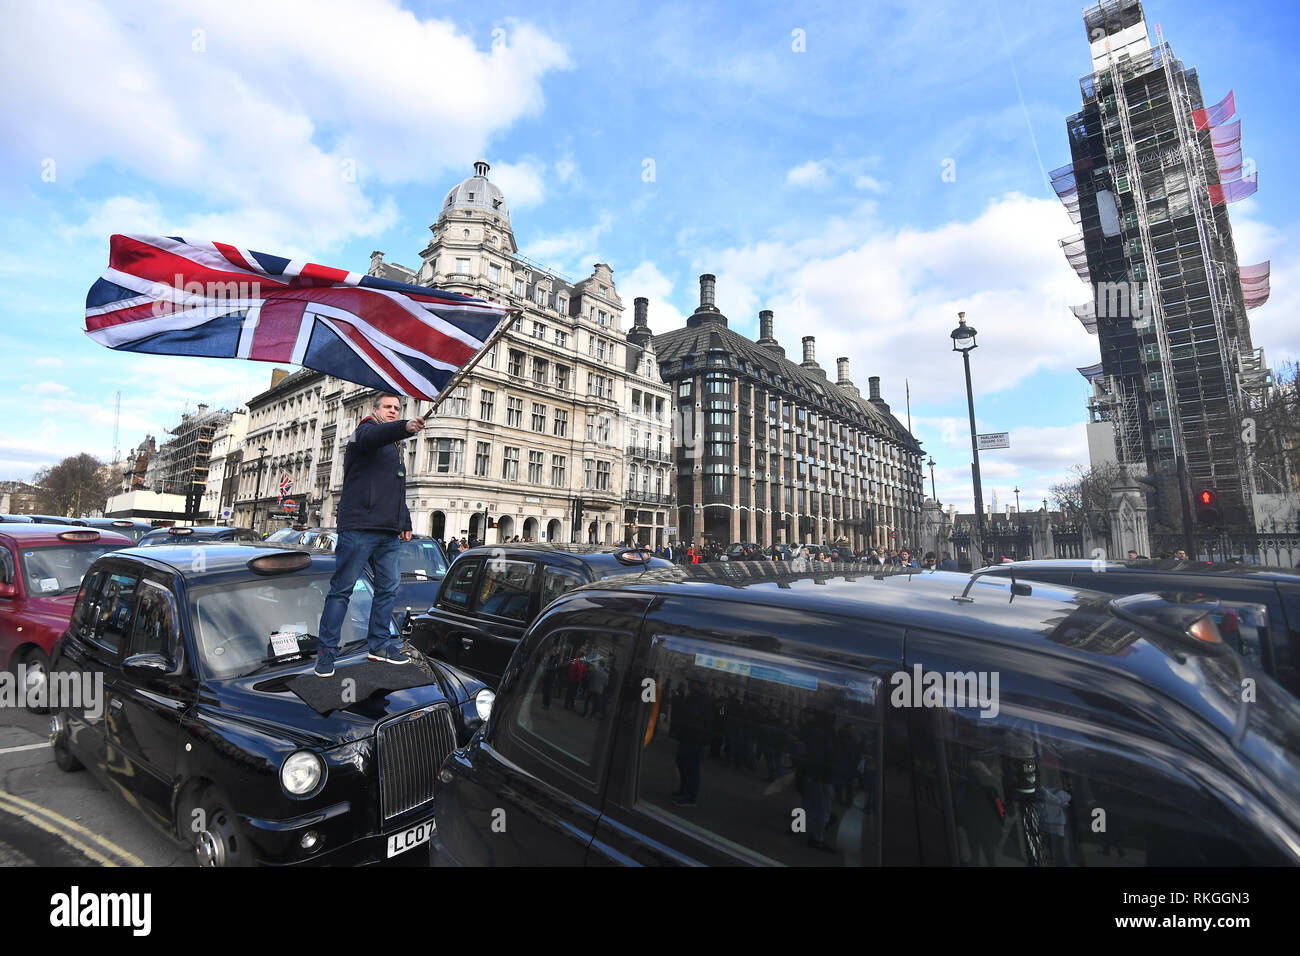 Les chauffeurs de taxi bloquer la route pendant une manifestation devant les Chambres du Parlement à Londres, dans la dernière étape de la protestation contre la TFL et autorités locales qui restreignent leur accès à des parties de Londres. Banque D'Images